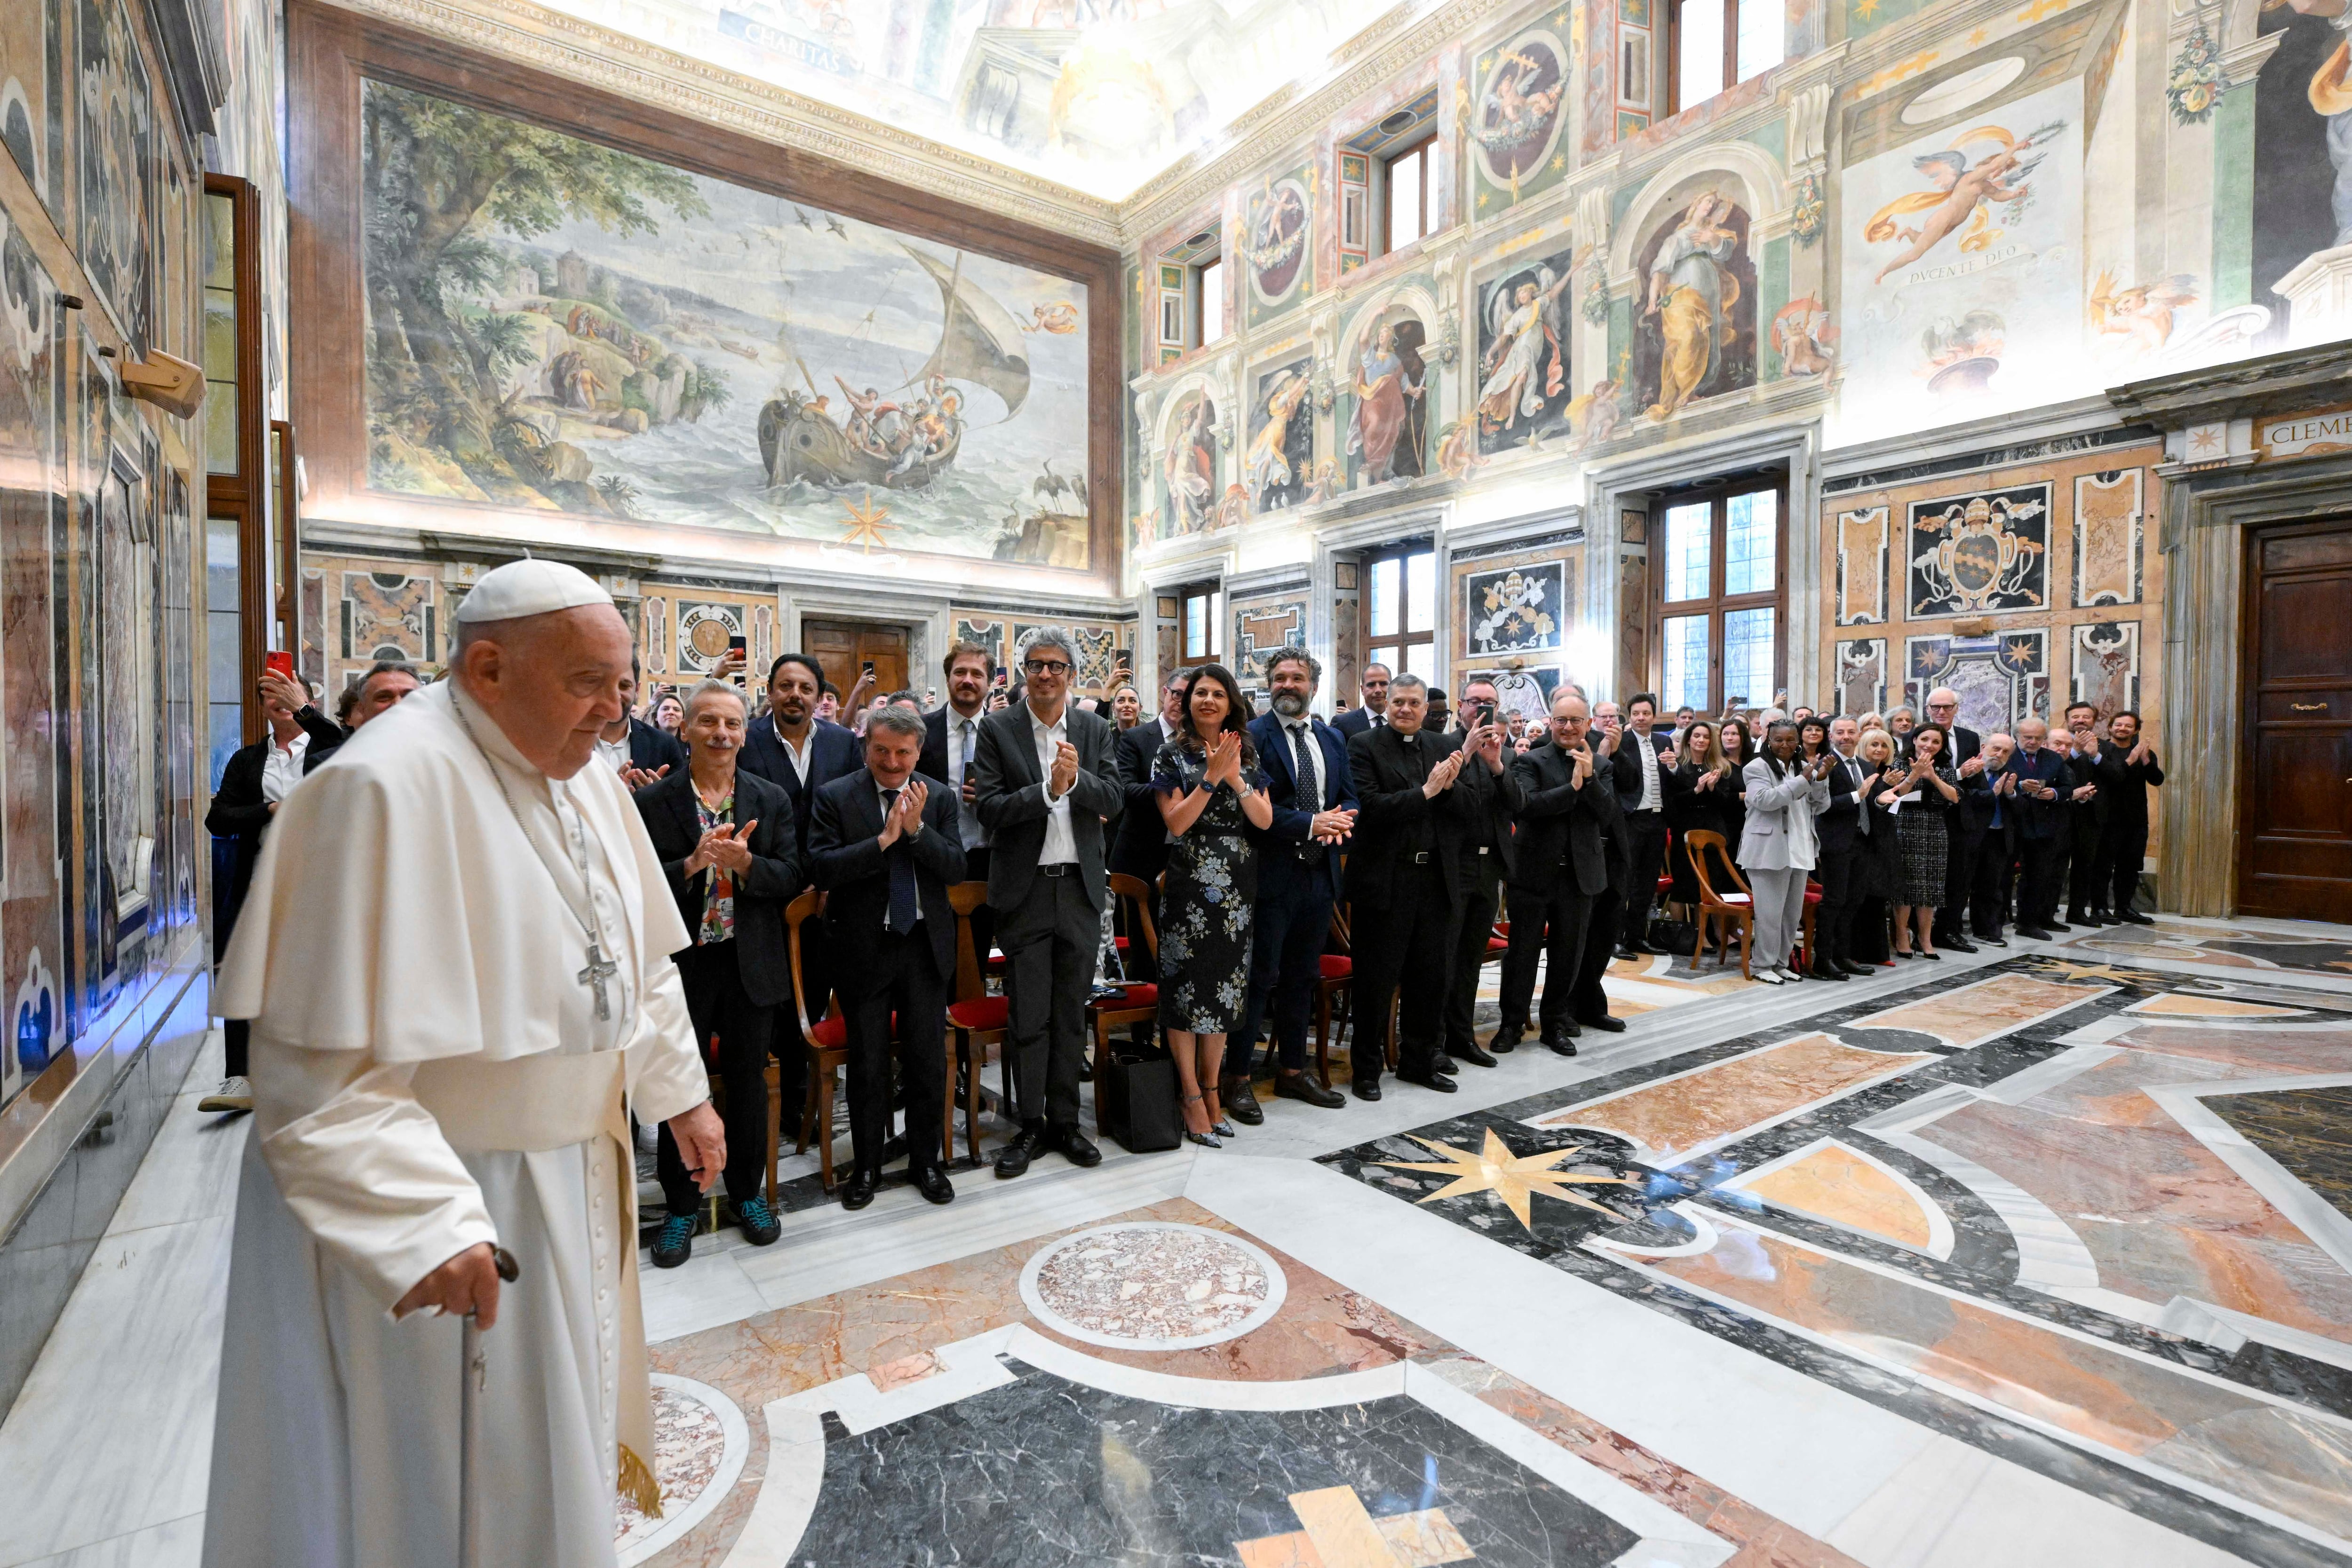 Antes de conversar con los humoristas, el papa Francisco fue recibido entre aplausos por los 100 invitados de 15 países.